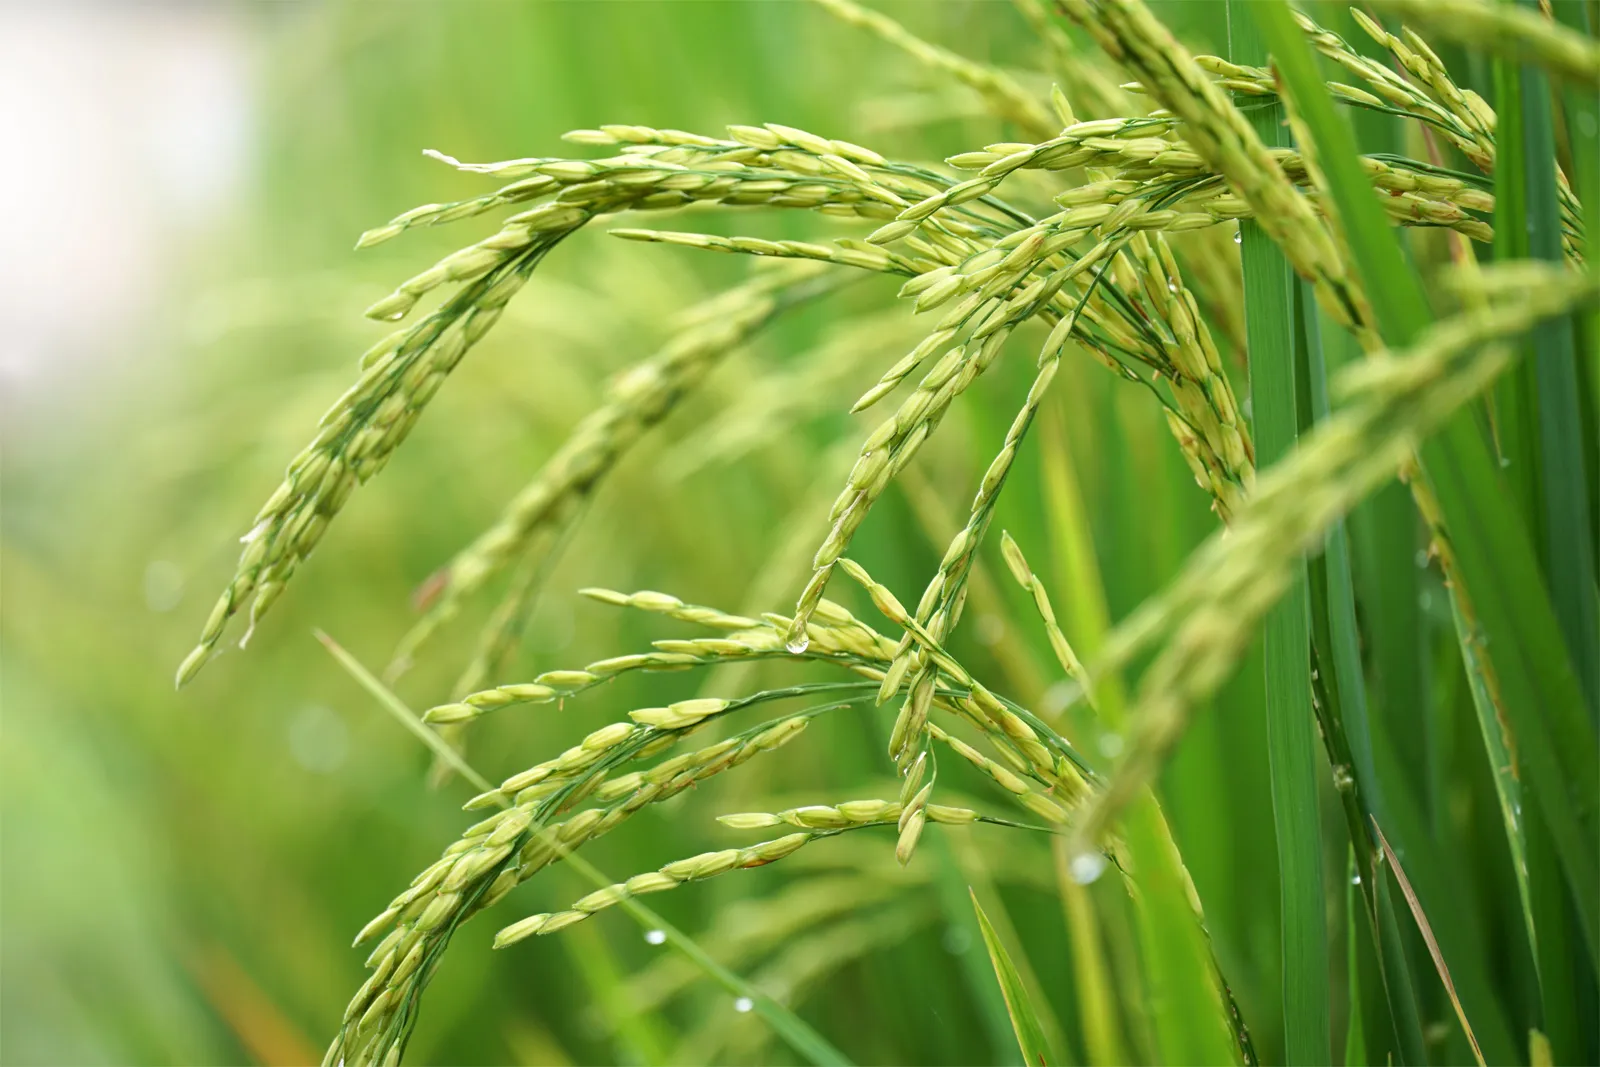 افزایش برداشت برنج با کود ۱۰x شوک